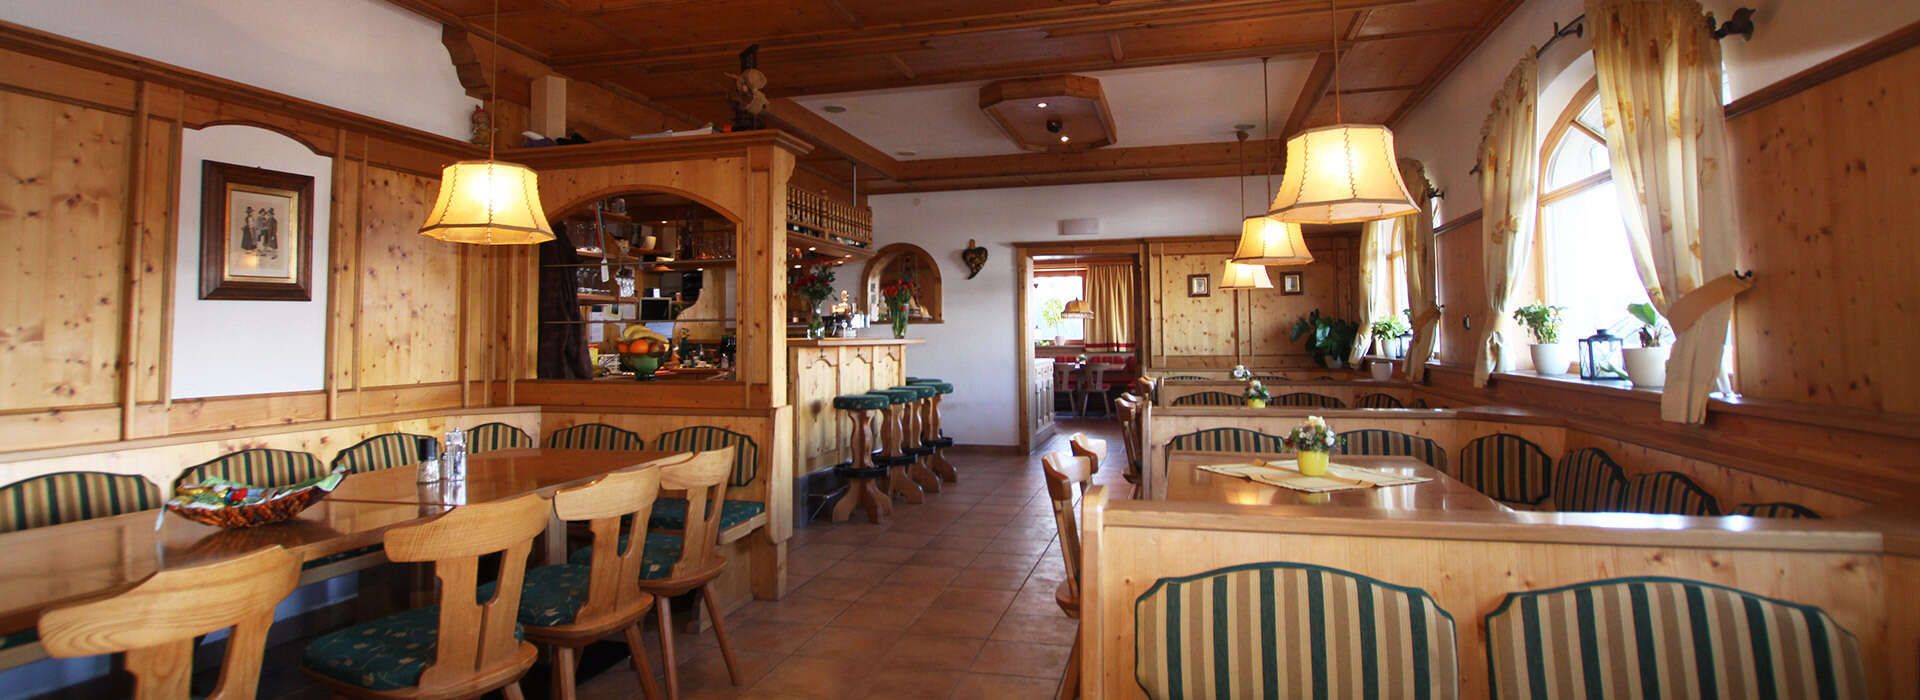 Bergschenke Krin Dining room in the Kirchberg Tirol restaurant